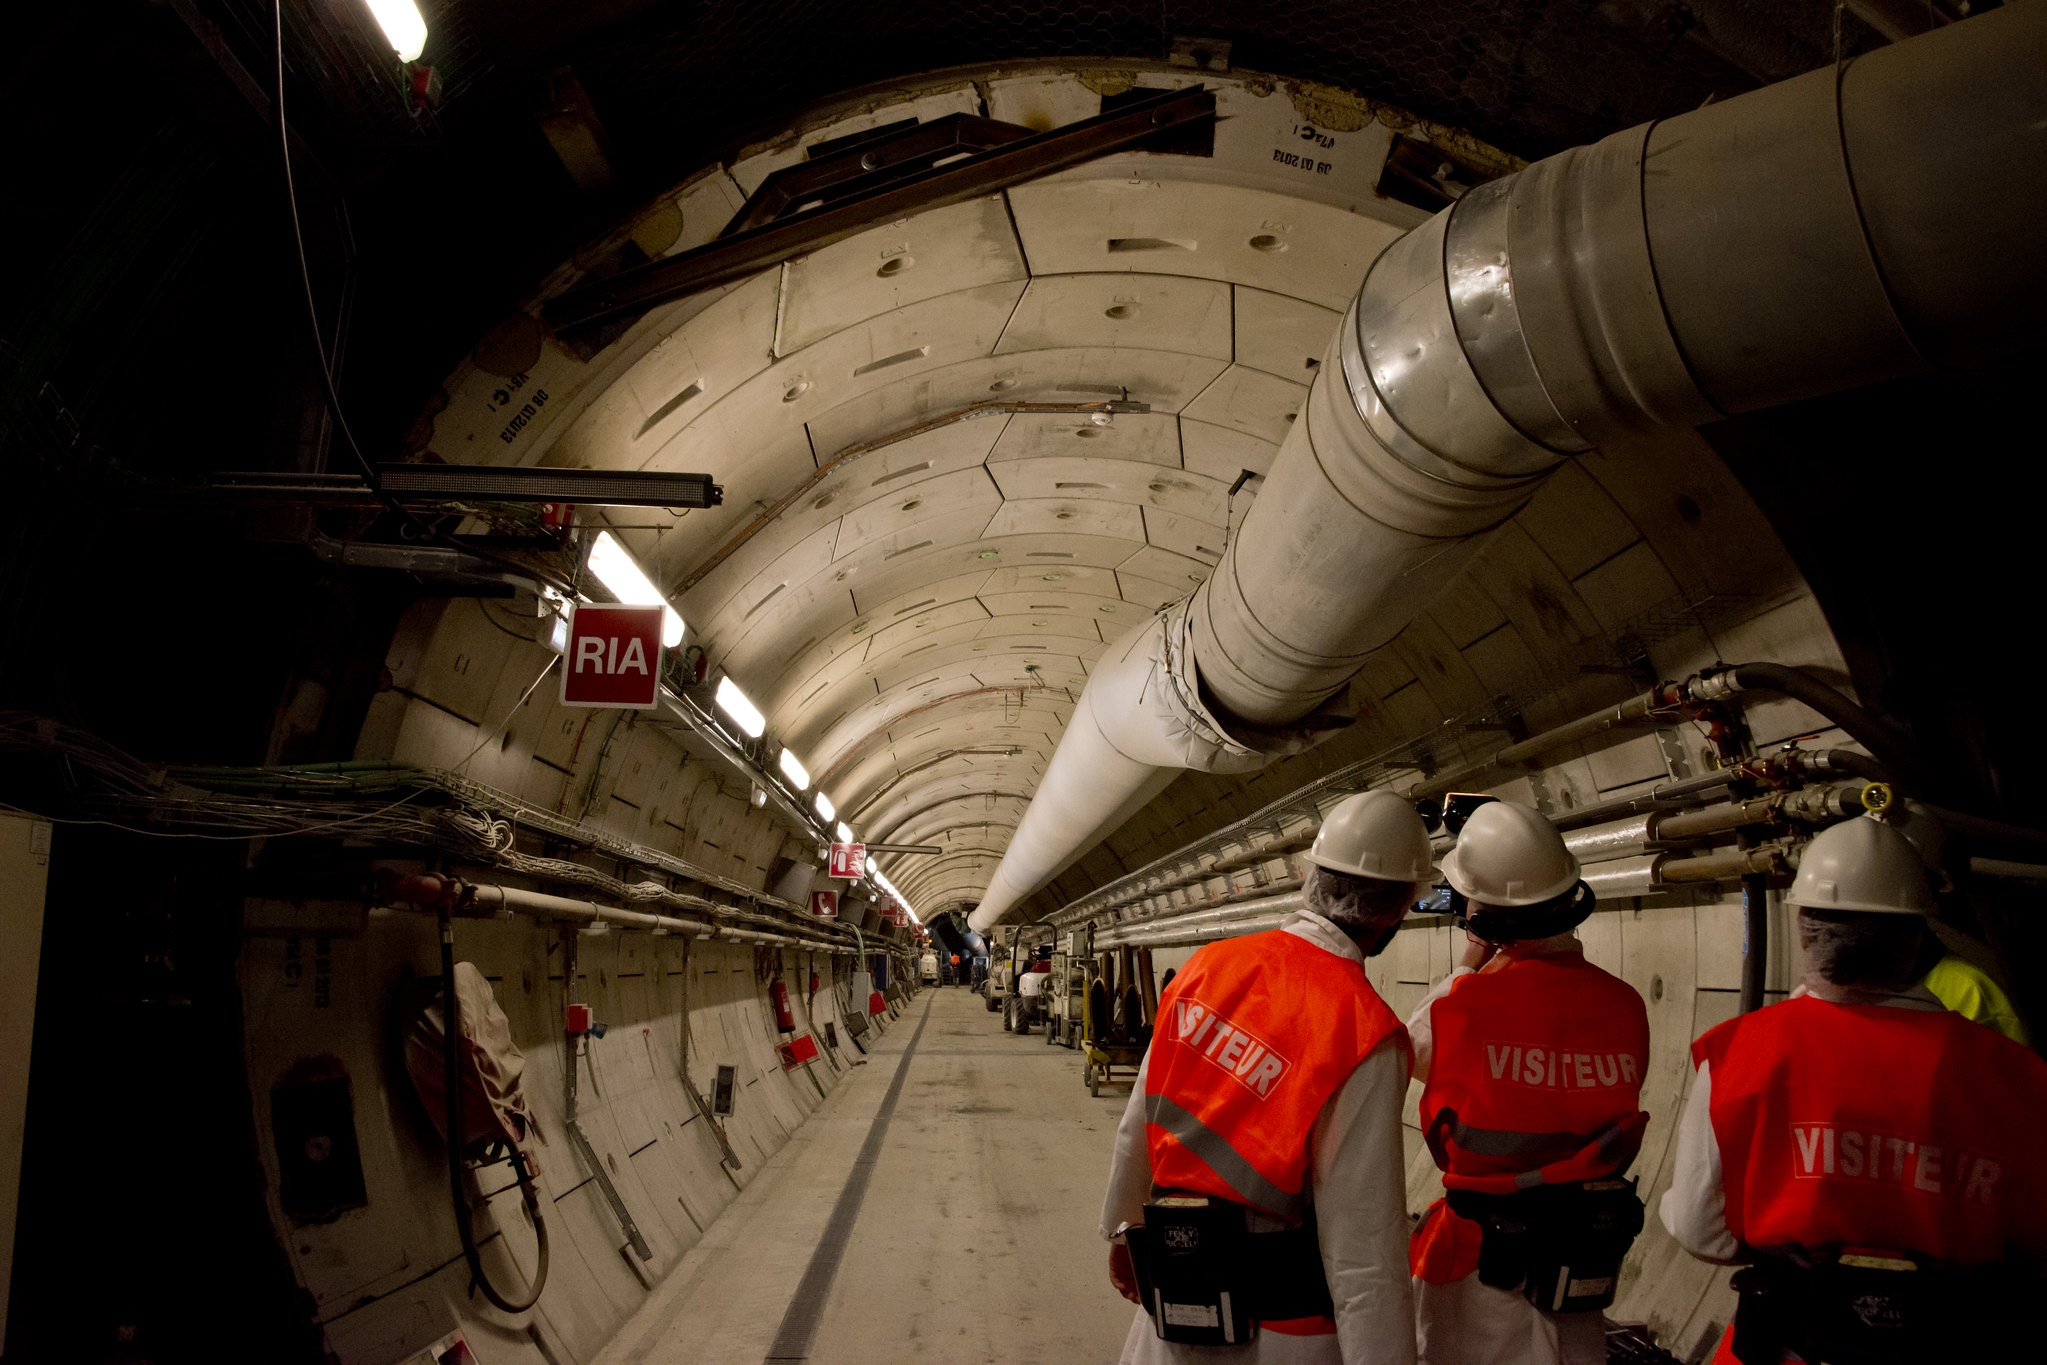 Des visiteurs dans le tunnel expérimental de l'Andra à Bure. Photo Aurélien Glabas, Flickr, Creative Commons